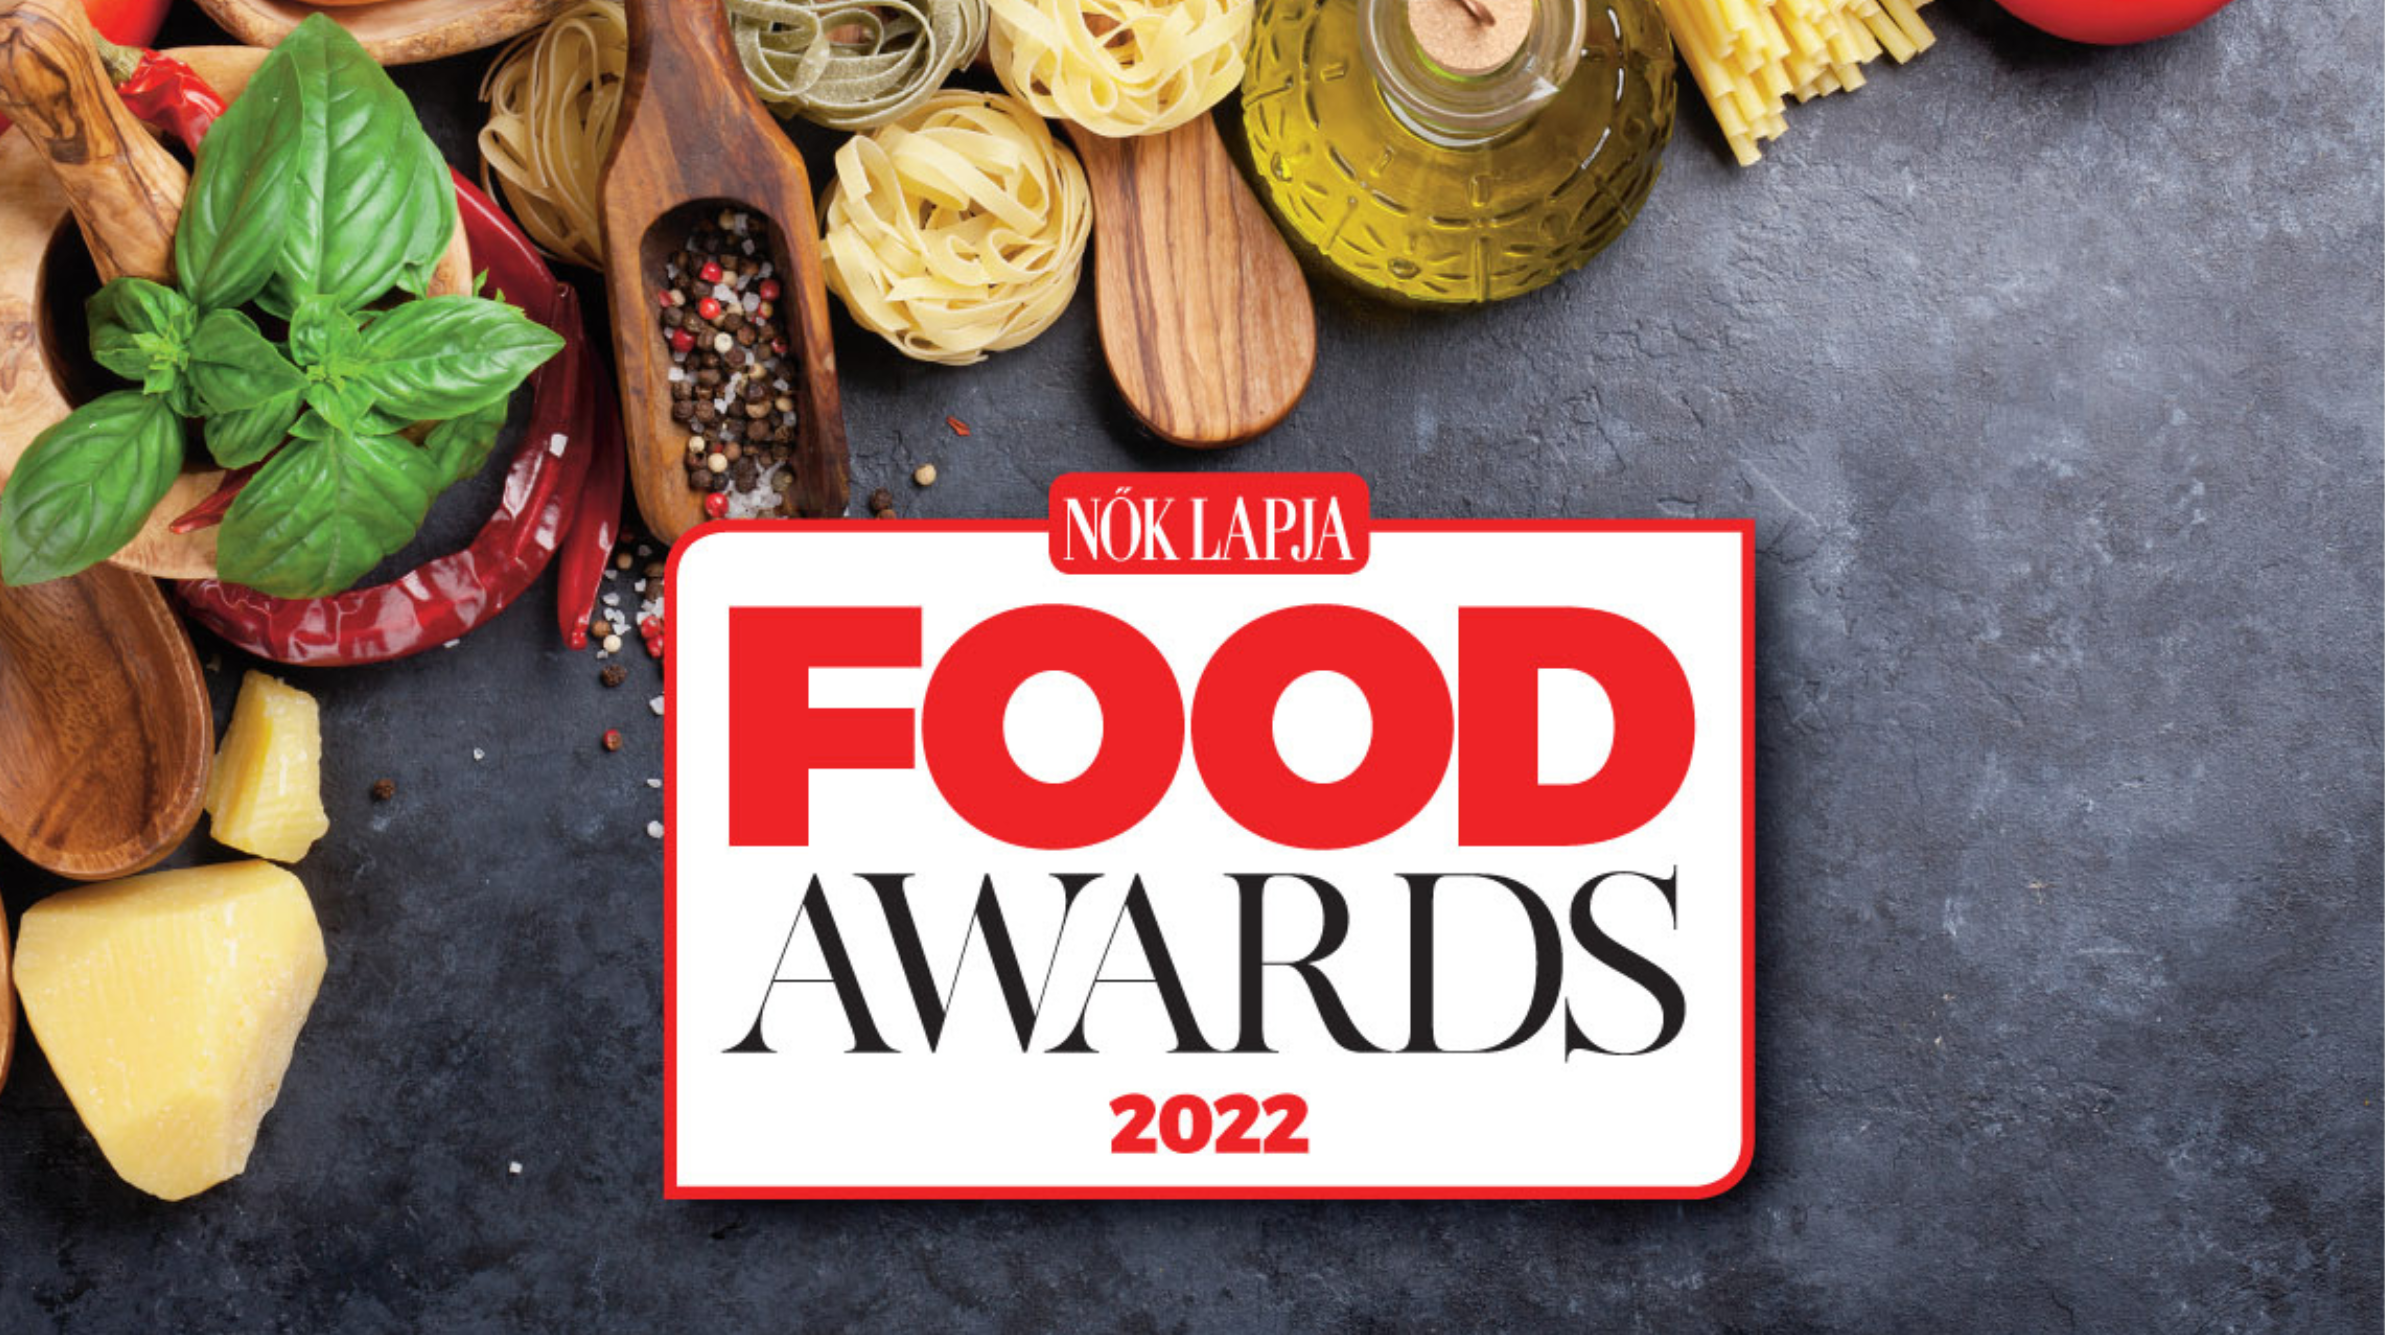 Minden várakozást felülmúlt az első Nők Lapja Food Awards!